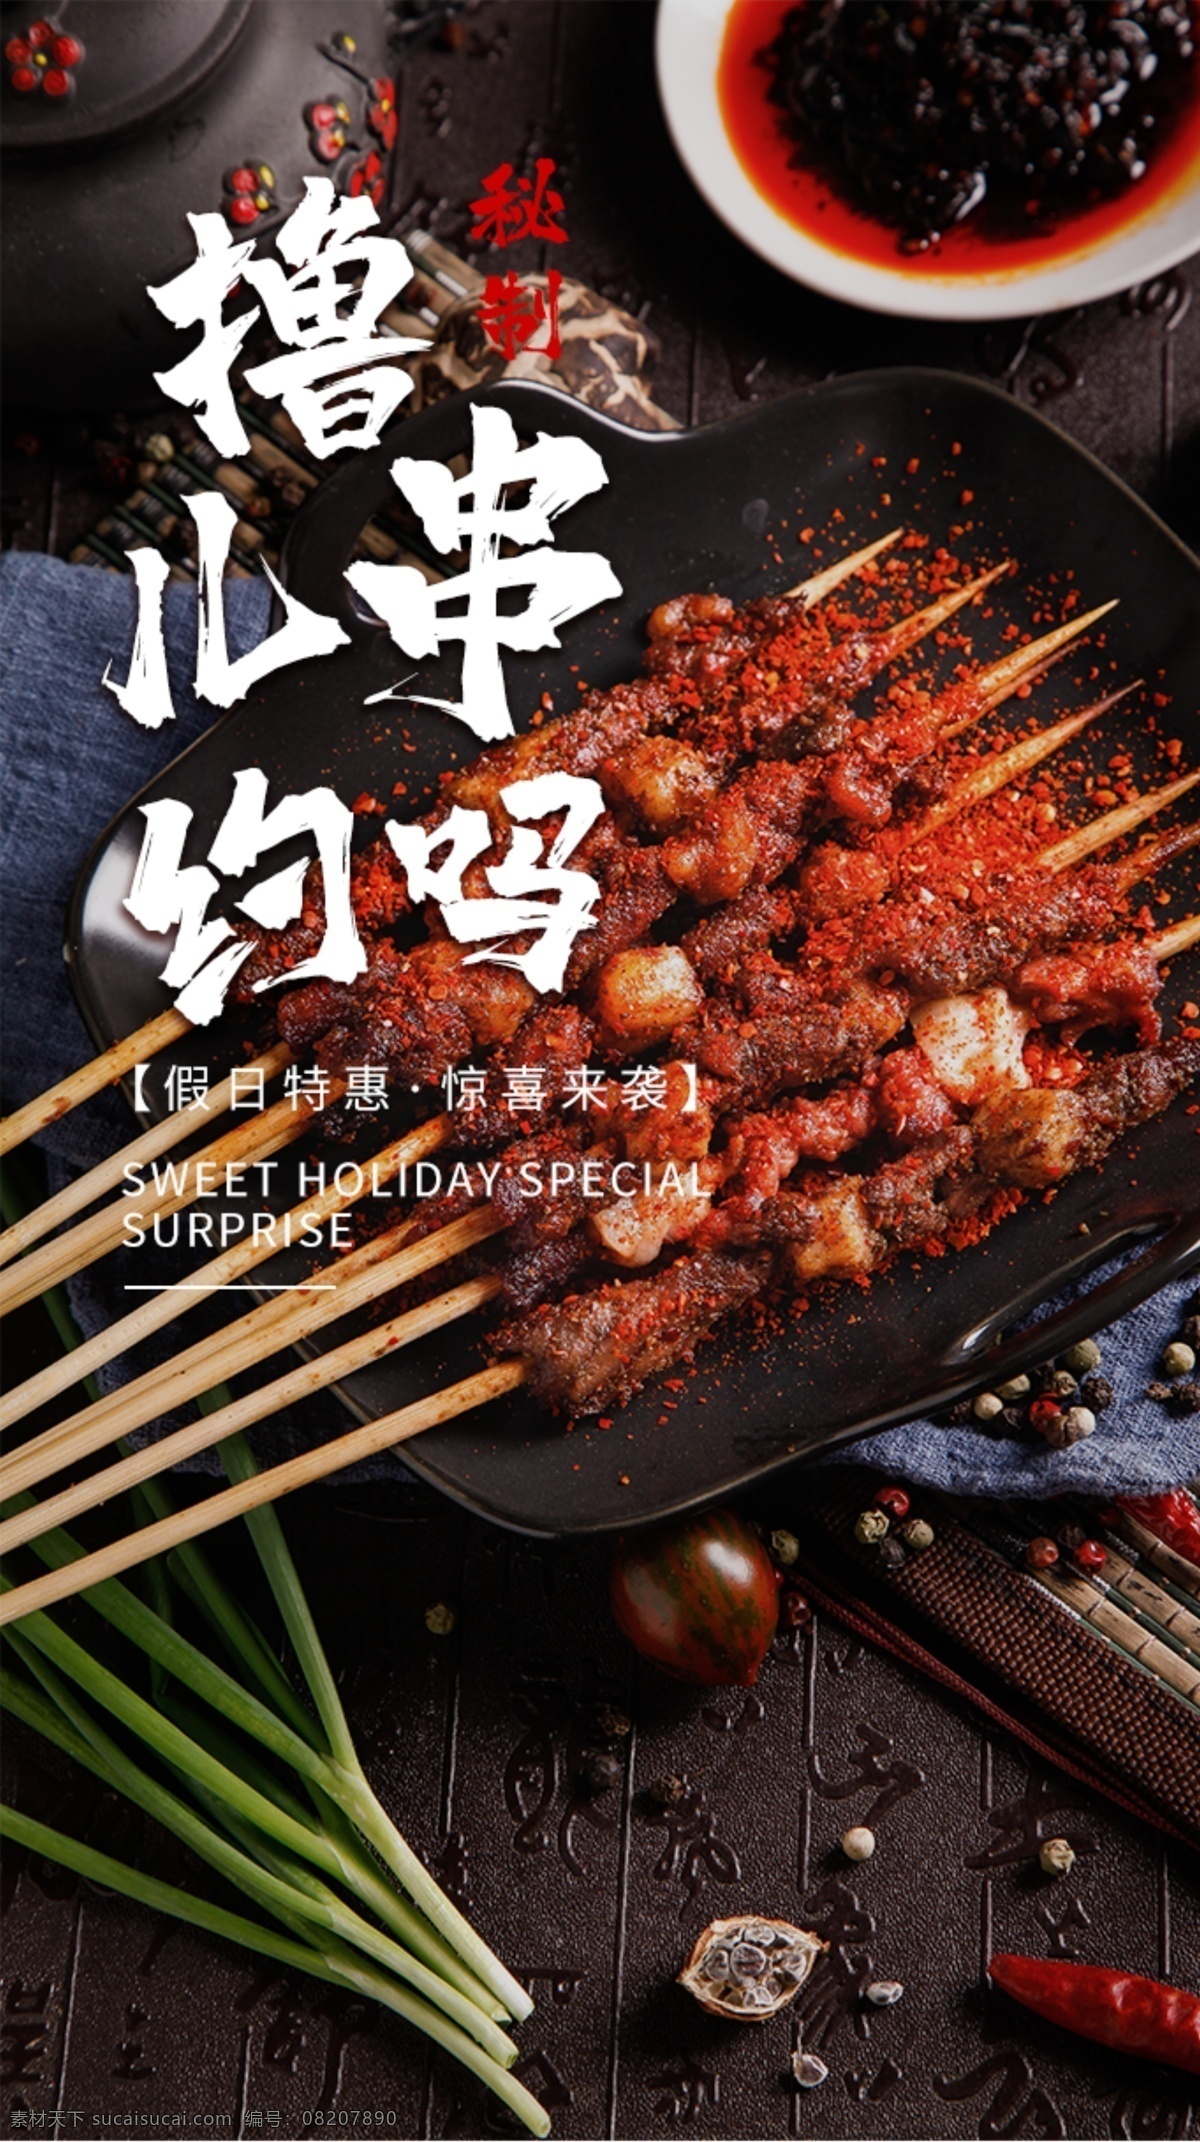 烧烤 撸 串 美食 食 材 海报 素材图片 烧烤撸串 食材 餐饮美食 类